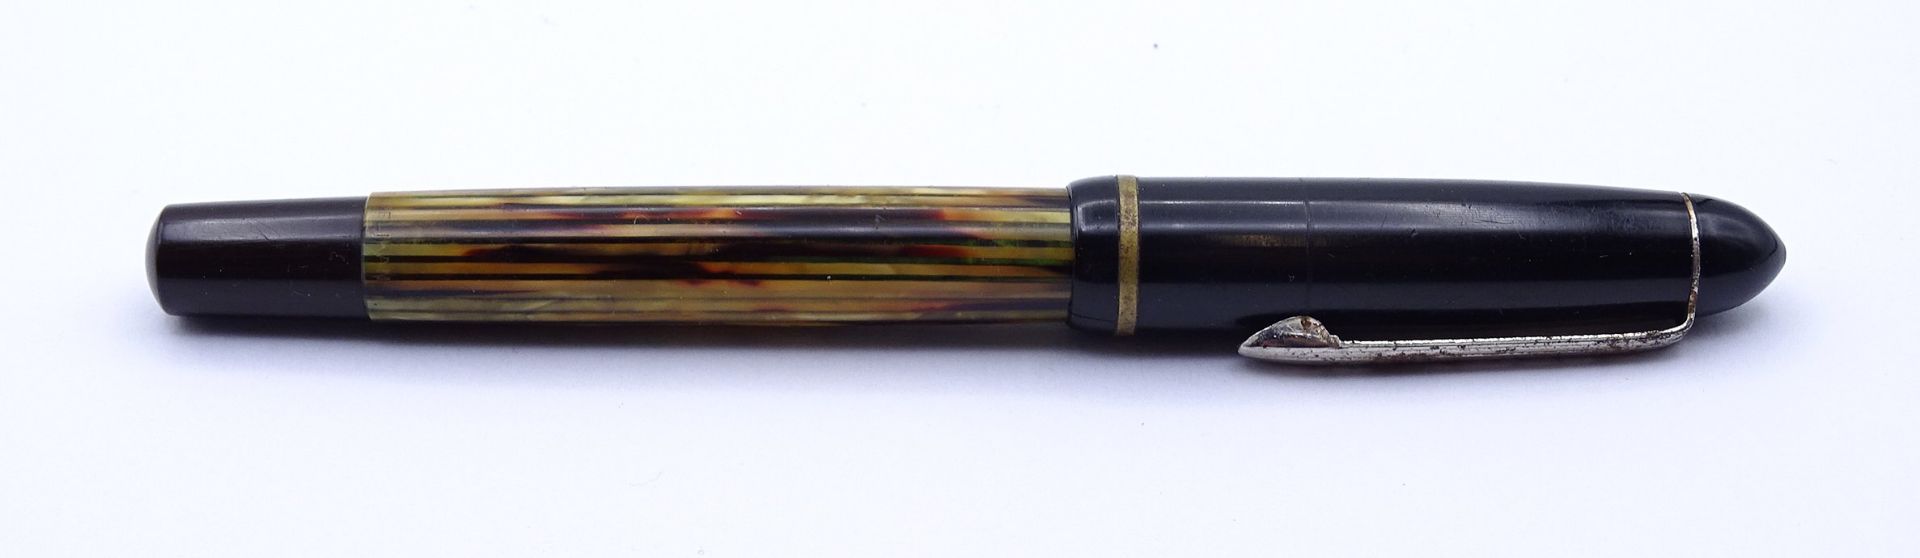 Pelikan Füller, GG Feder 585/000 Stärke F, Gebrauchsspuren, Deckel wohl nicht passend - Image 4 of 5